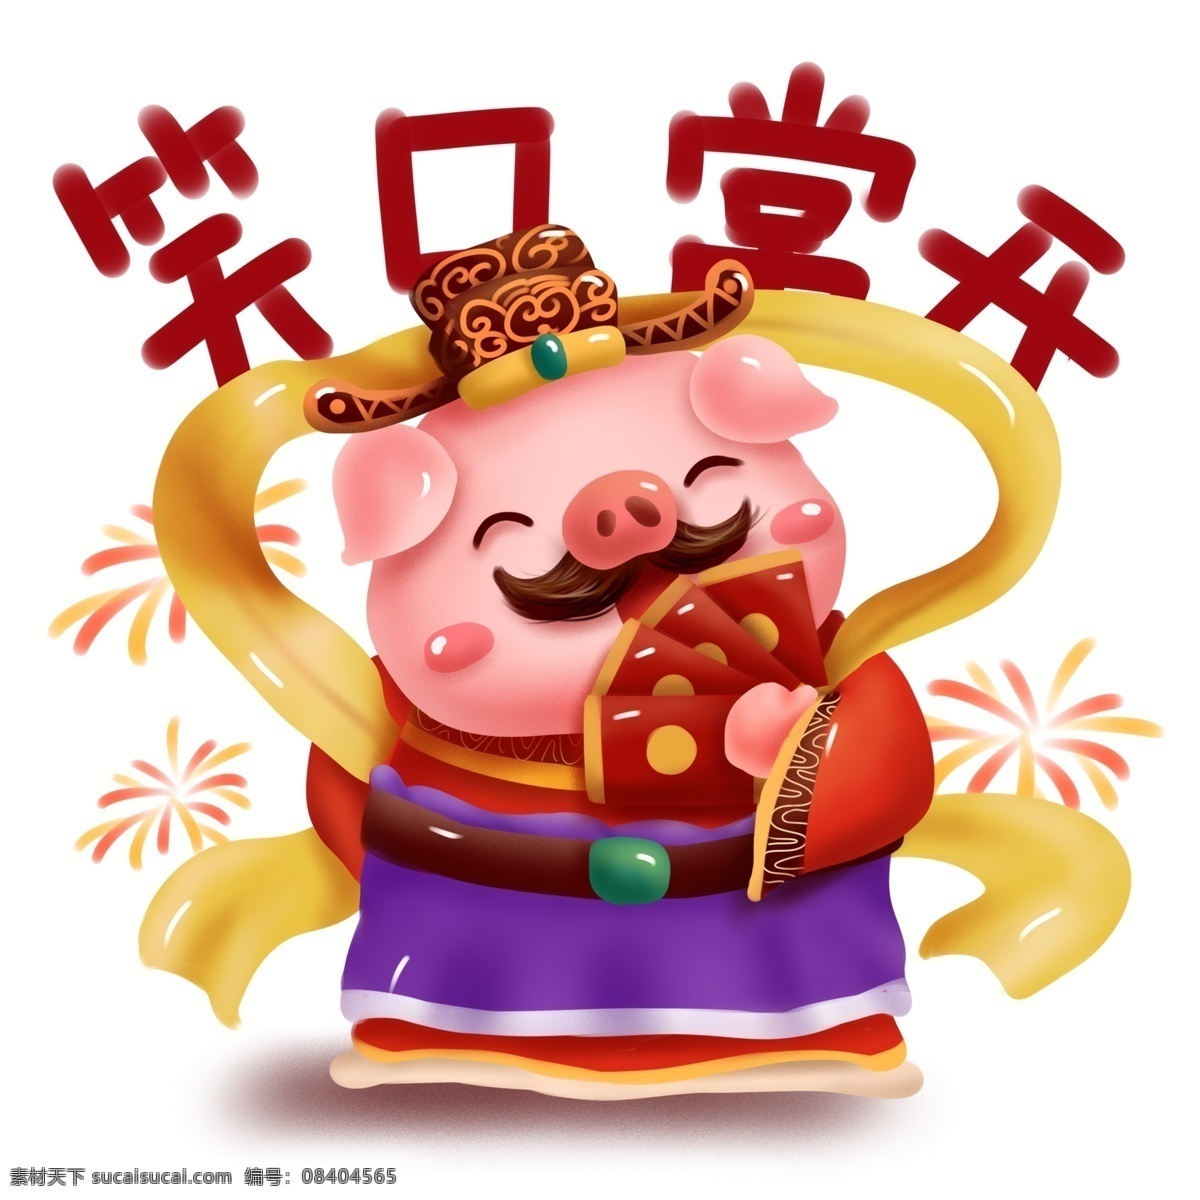 手绘 财神 猪年 动物 形象 派 红包 商用 插画 元素 可爱 喜庆 春节 卡通 开心 笑口常开 新年 过年 新春 烟花 配图